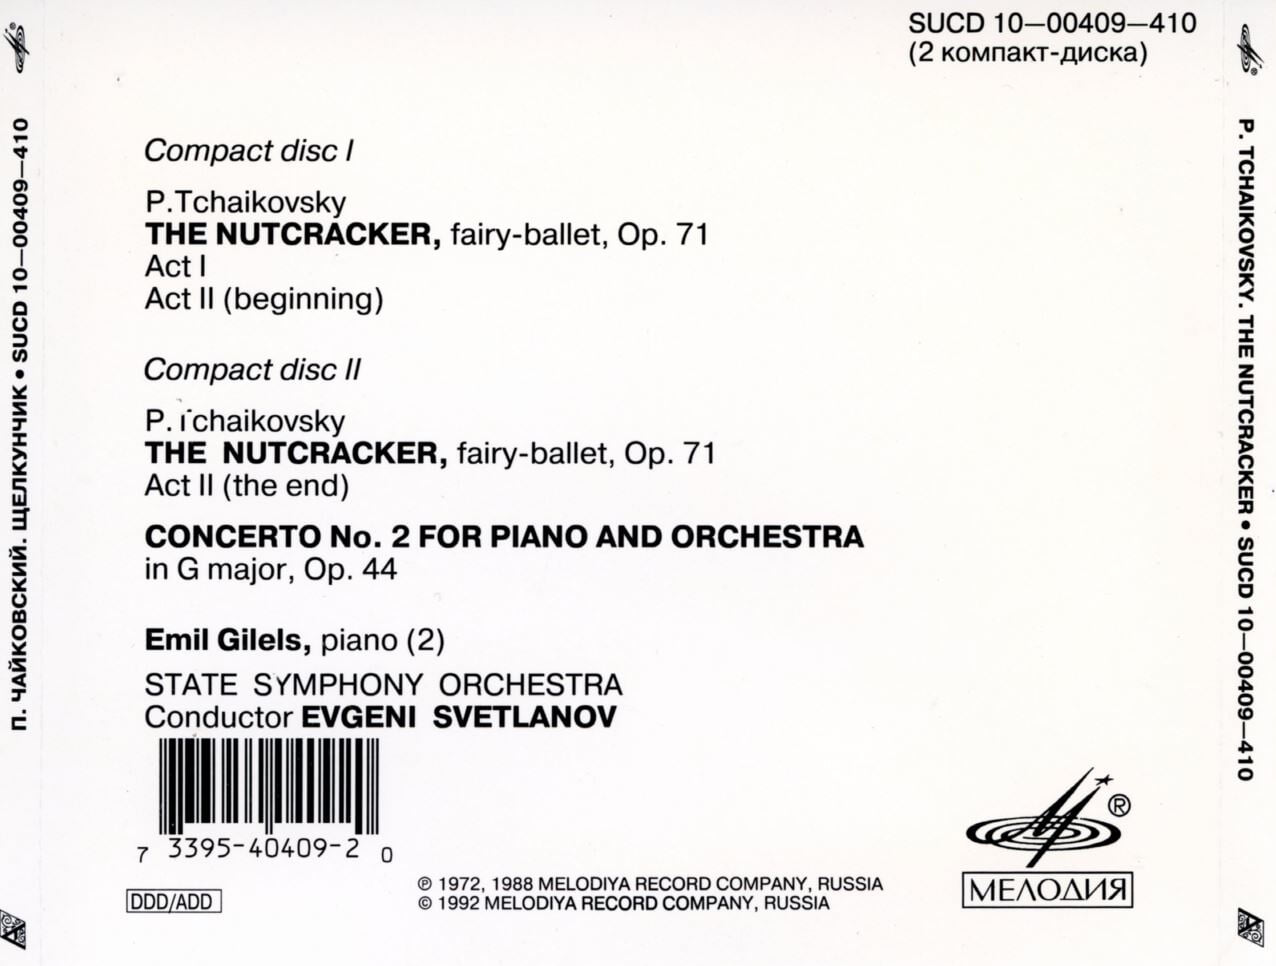 에밀 길렐스 - Emil Gilels - Tchaikovsky The Nutcracker (including Concerto No.2) 2Cds [U.S발매]